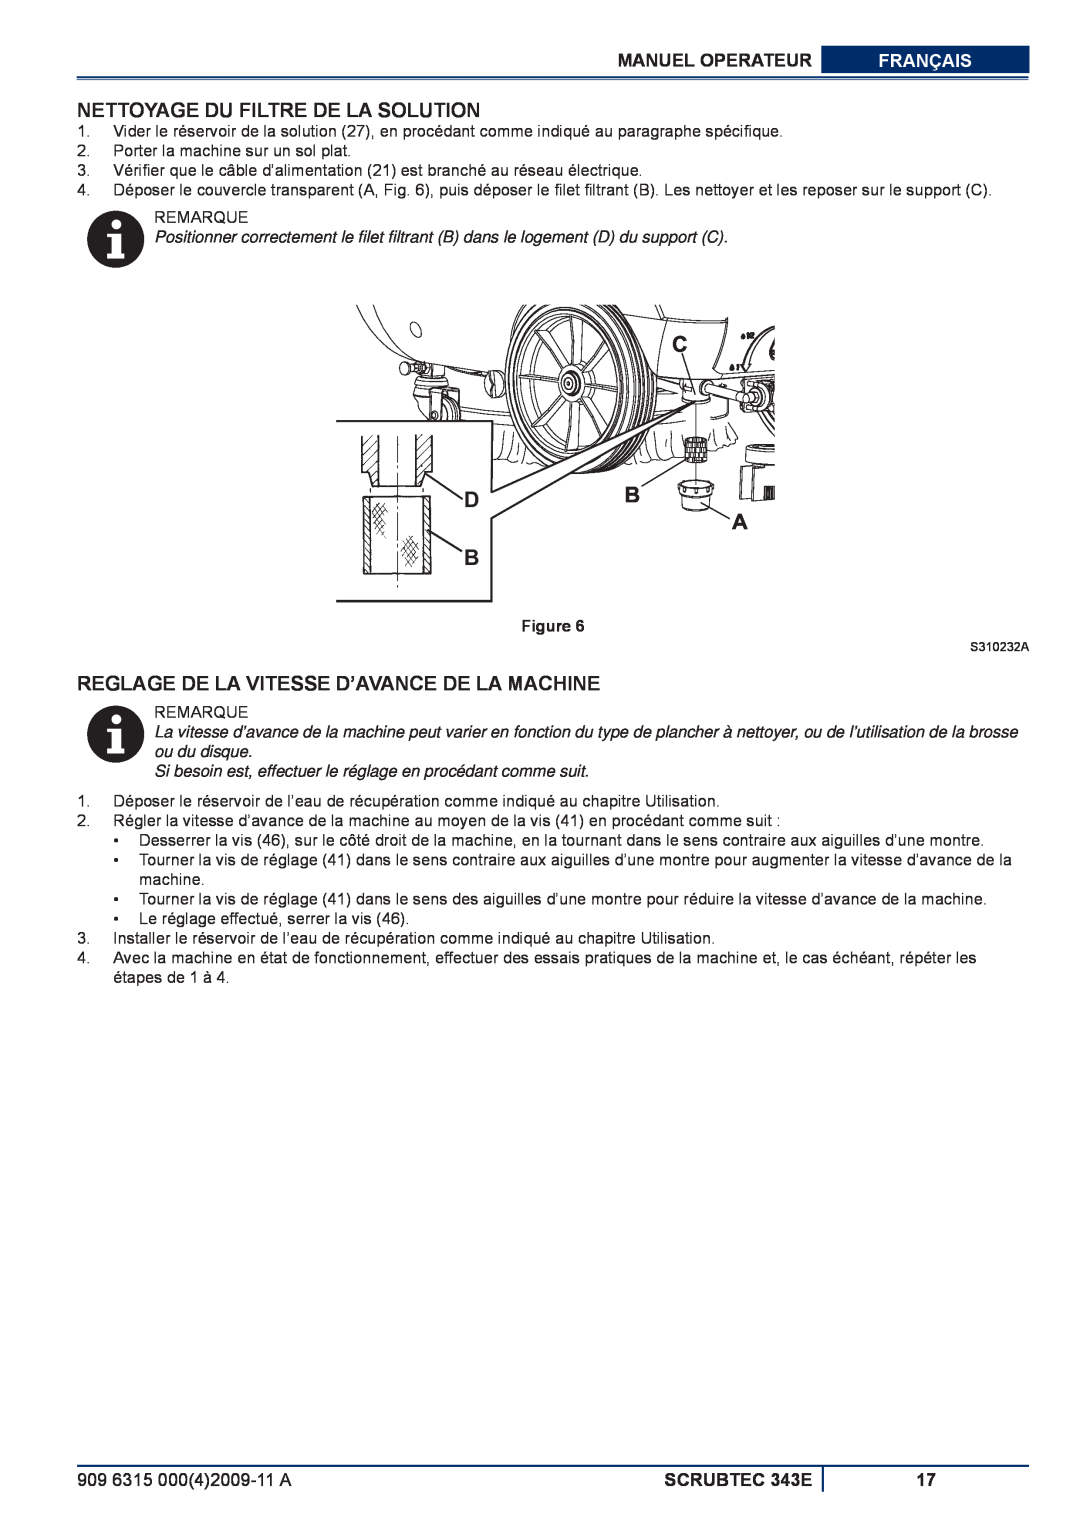 Nilfisk-ALTO 343E Nettoyage Du Filtre De La Solution, Reglage De La Vitesse D’Avance De La Machine, Manuel Operateur 